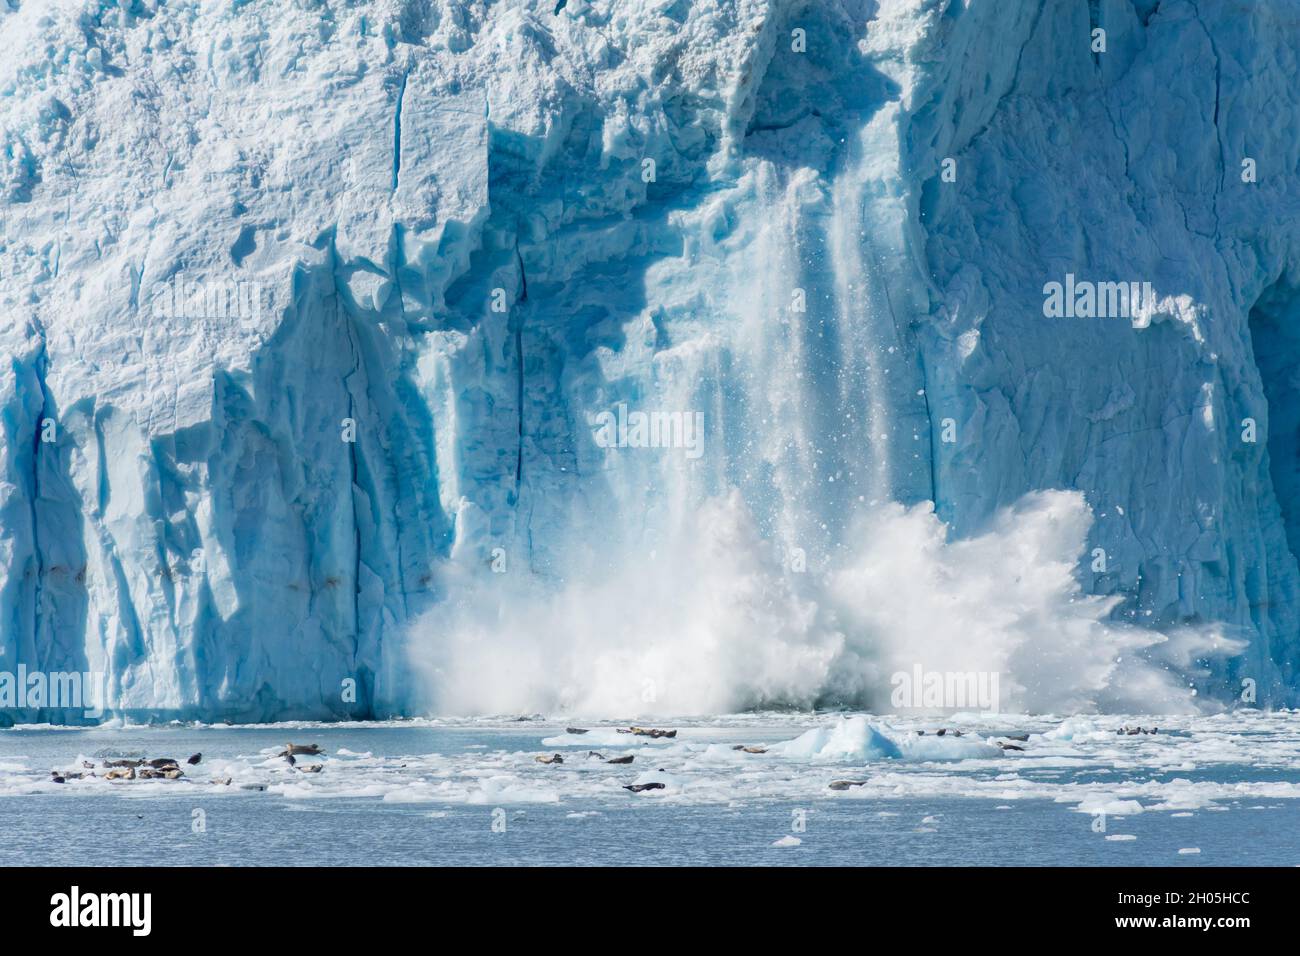 An Actively Calving Glacier in Gulf of Alaska Stock Photo